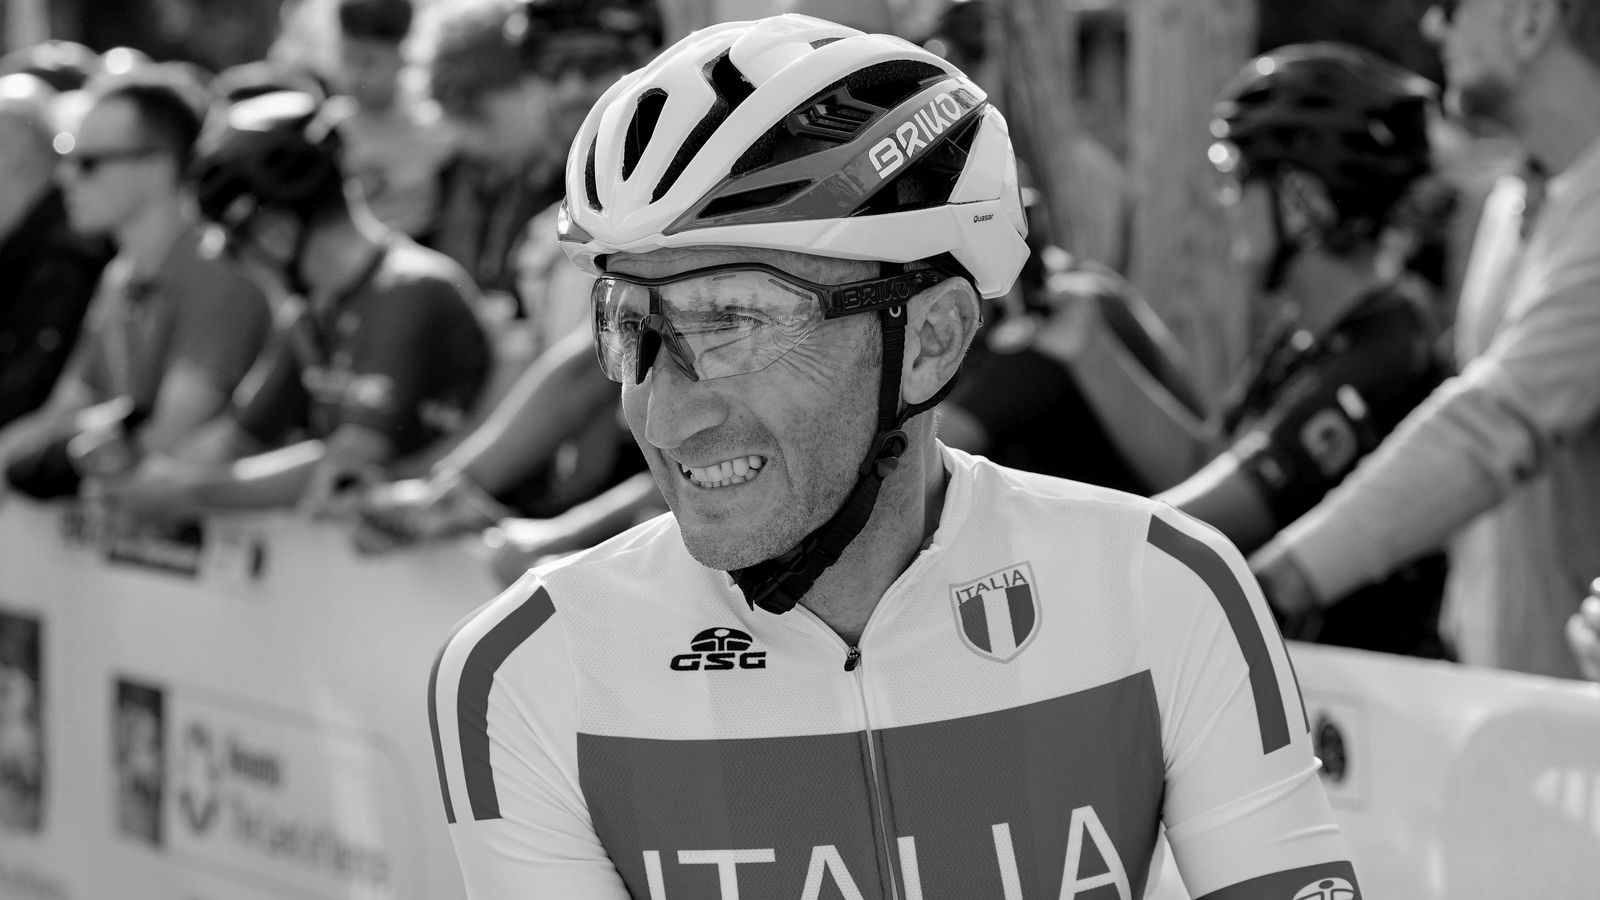 Muore in un incidente il ciclista professionista Davide Rebellin